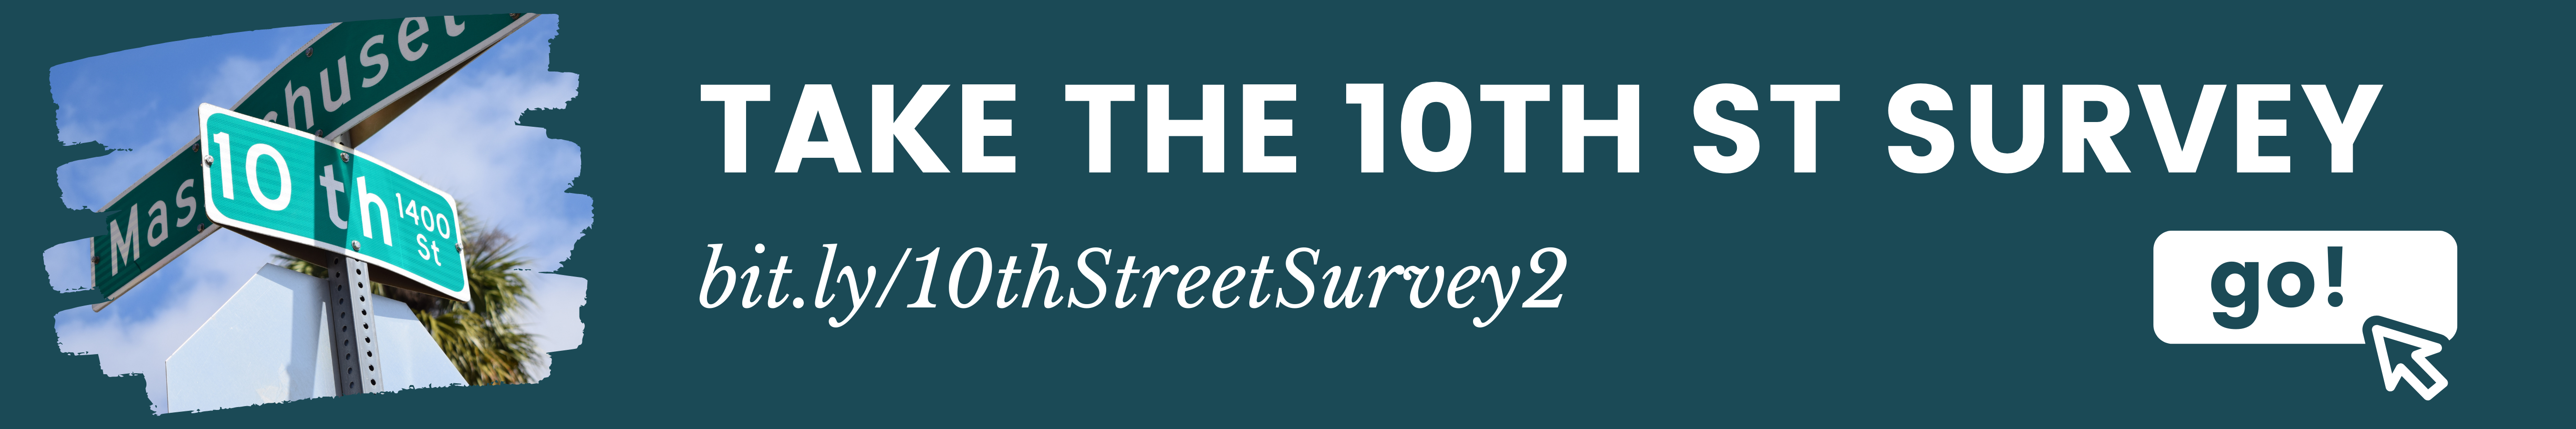 Take the 10th Street Survey